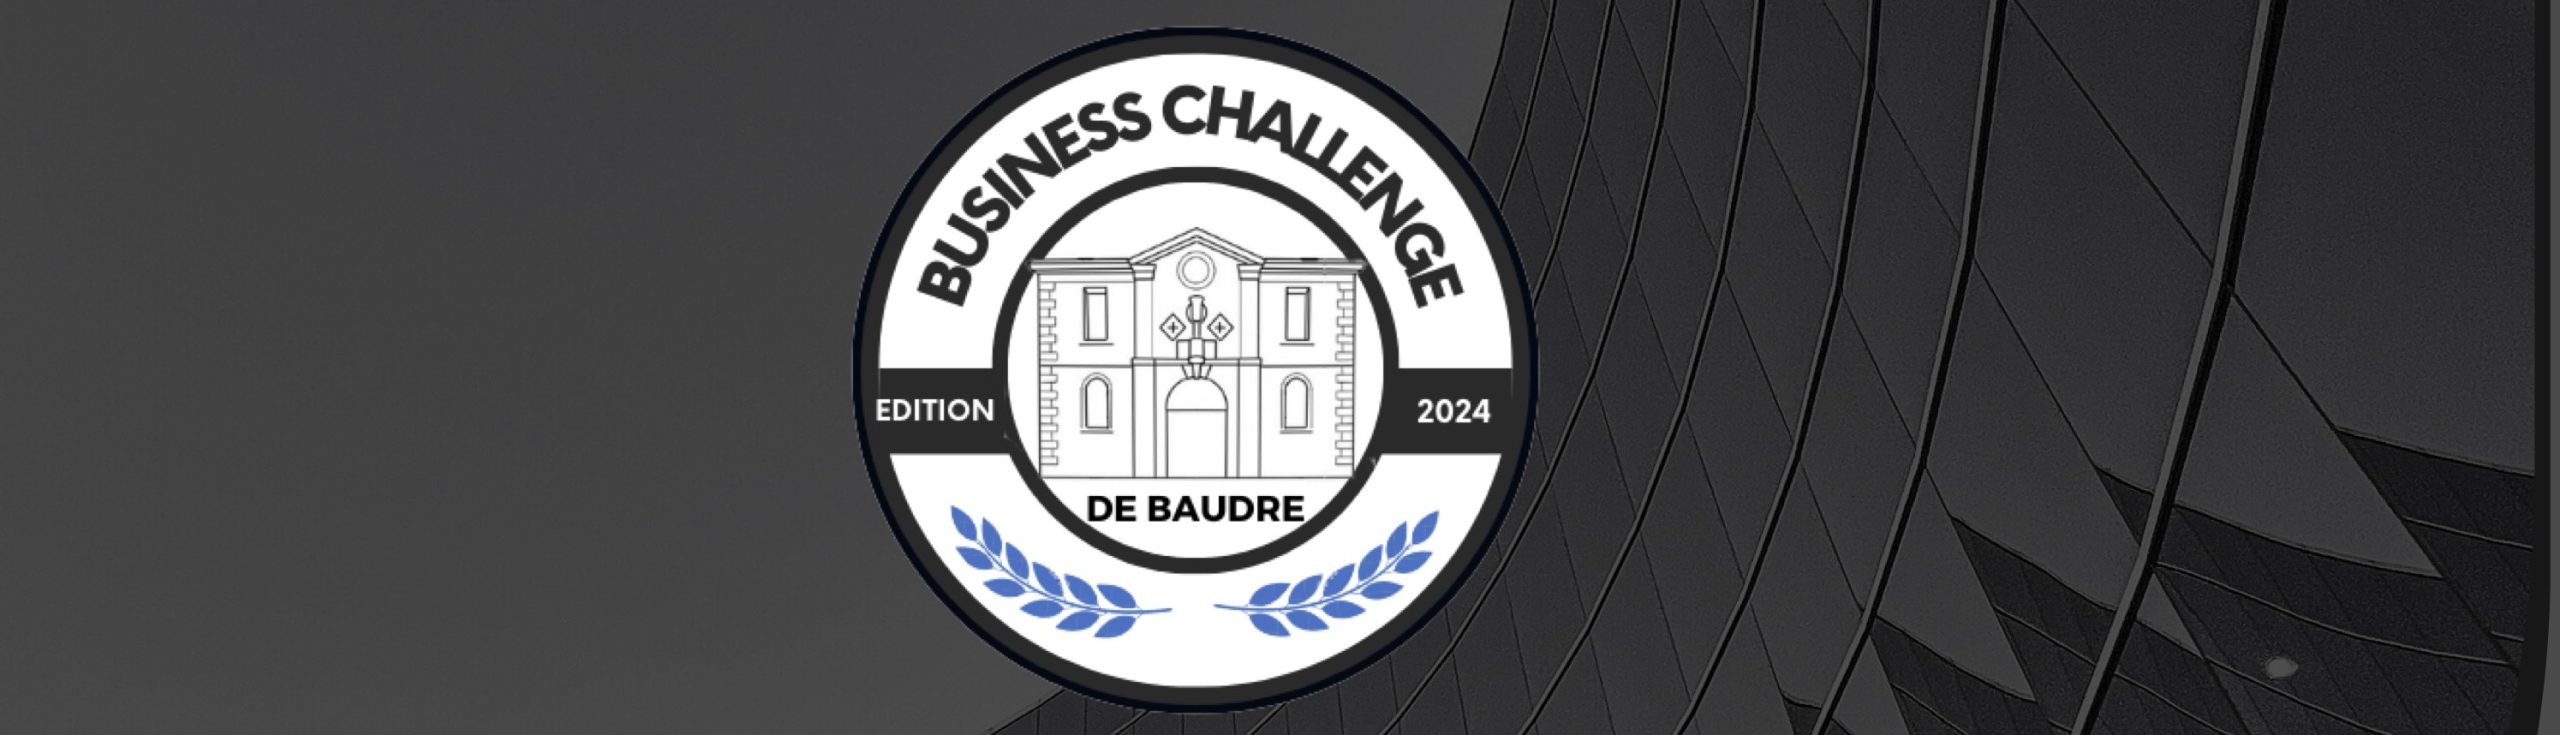 Business challenge 2024 mini